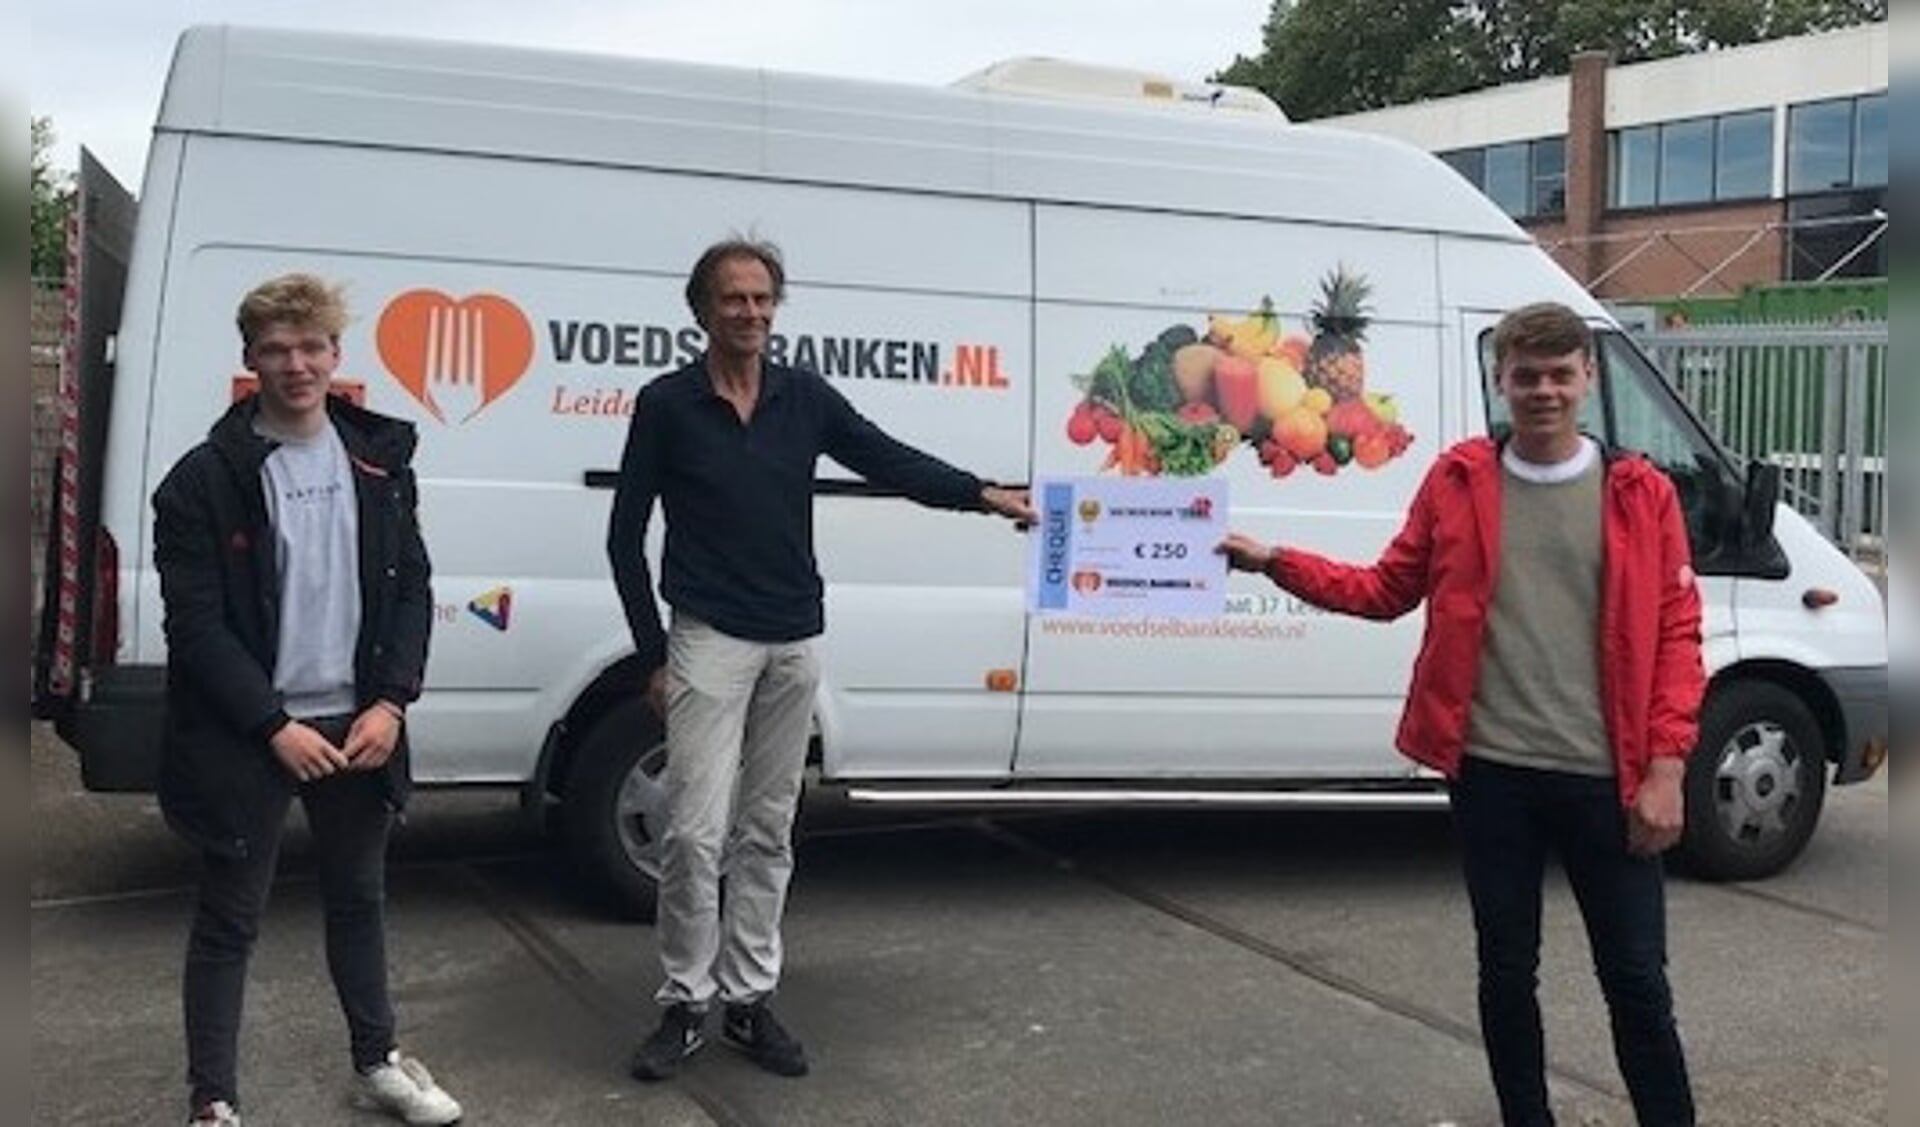 De coaches van Alecto JB1 overhandigden de cheque van 250 euro aan een vertegenwoordiger van de Voedselbank Leiden.  